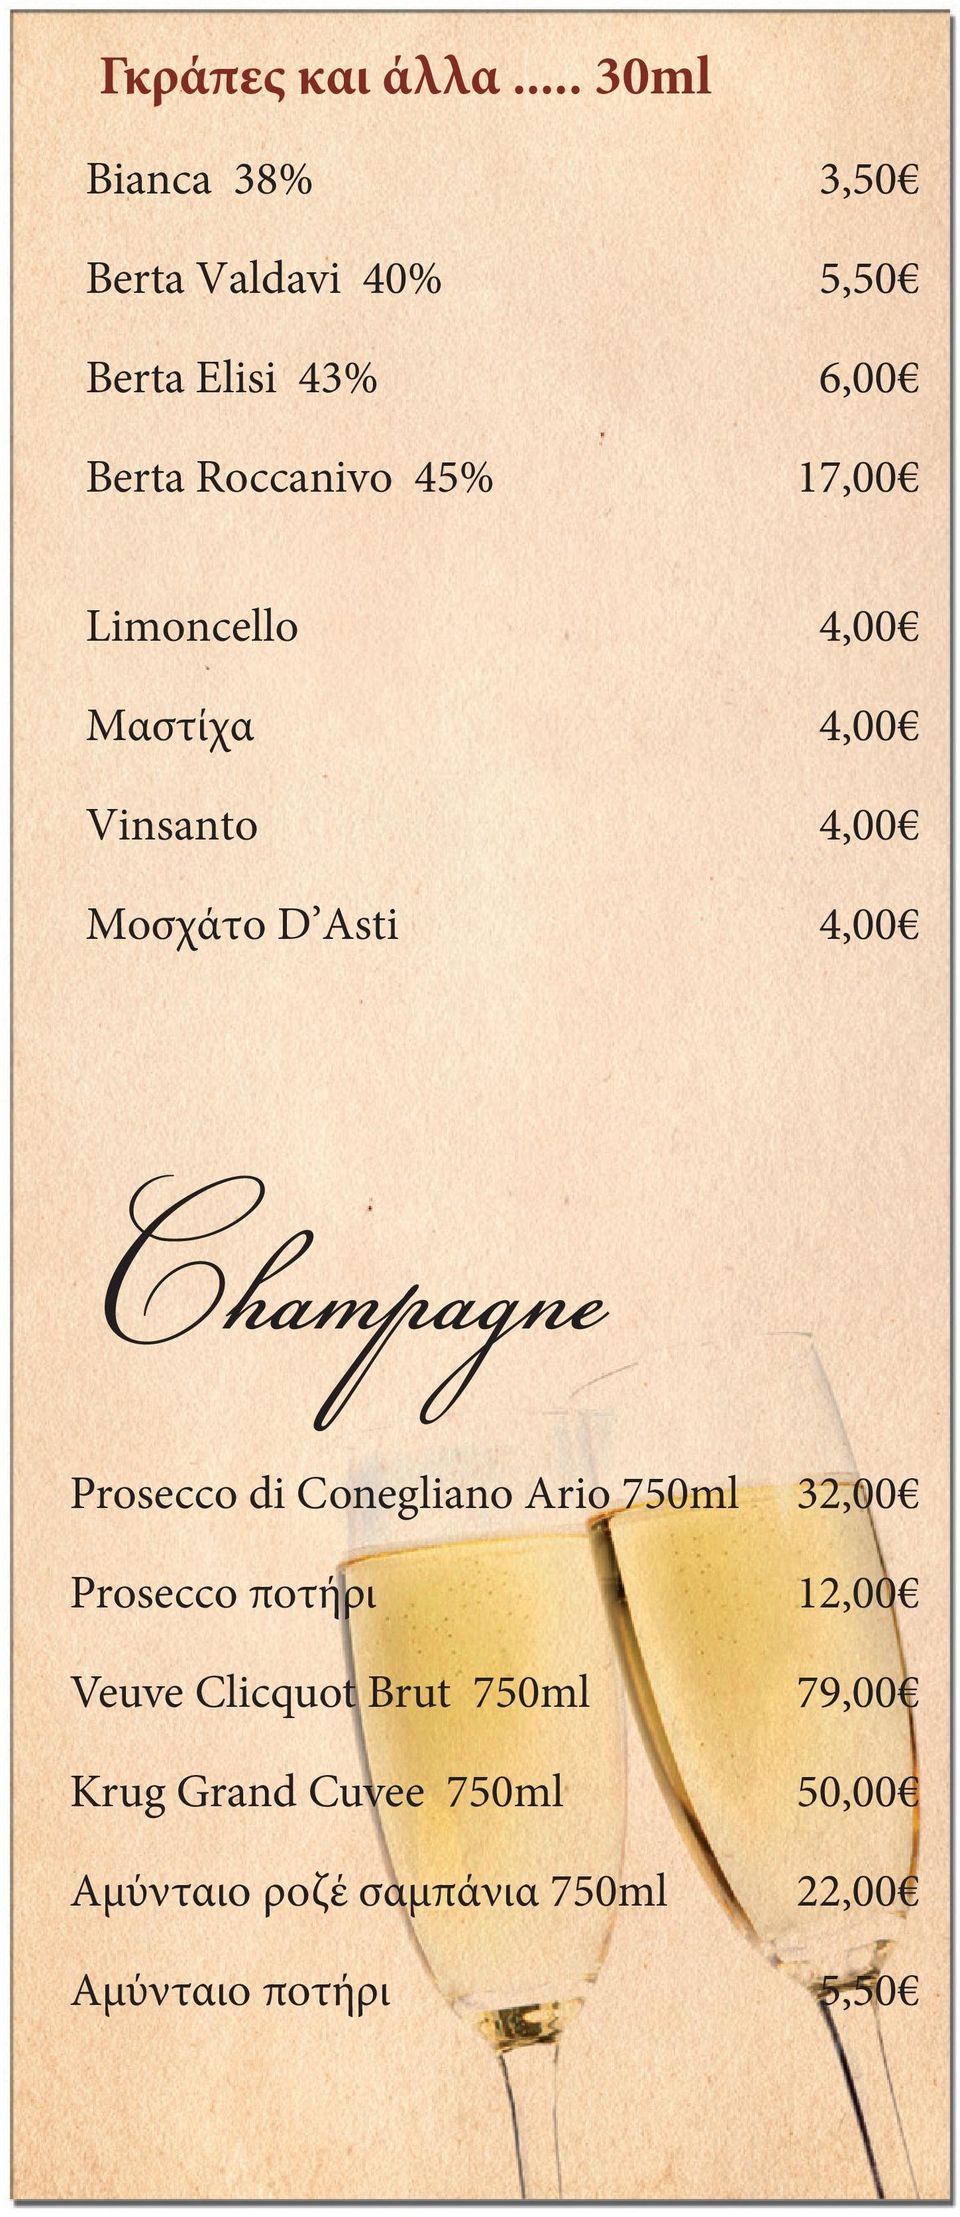 17,00 Limoncello Μαστίχα Vinsanto Mοσχάτο D Asti 4,00 4,00 4,00 4,00 Champagne Prosecco di